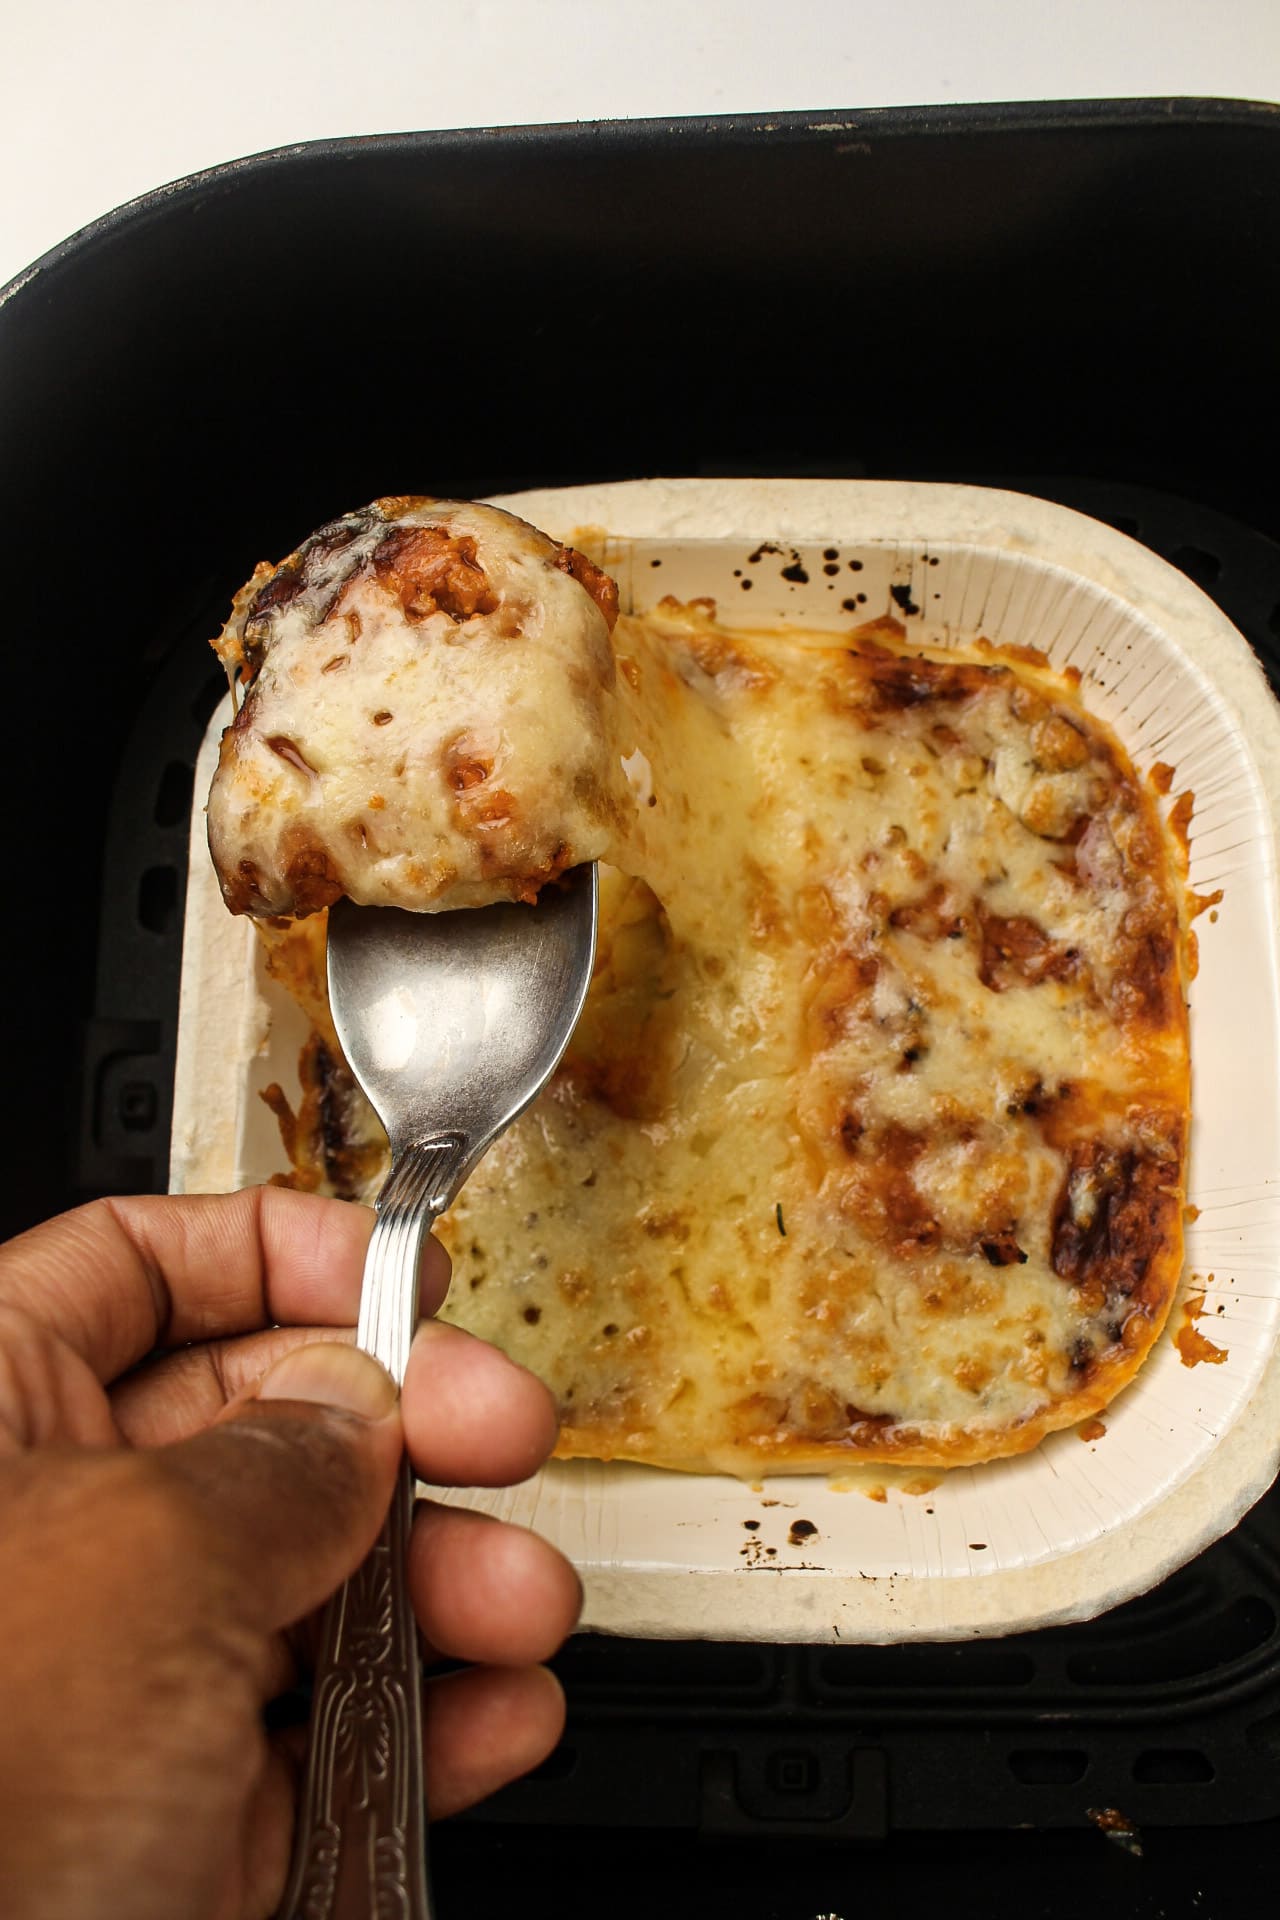 How long to cook frozen lasagna in air fryer